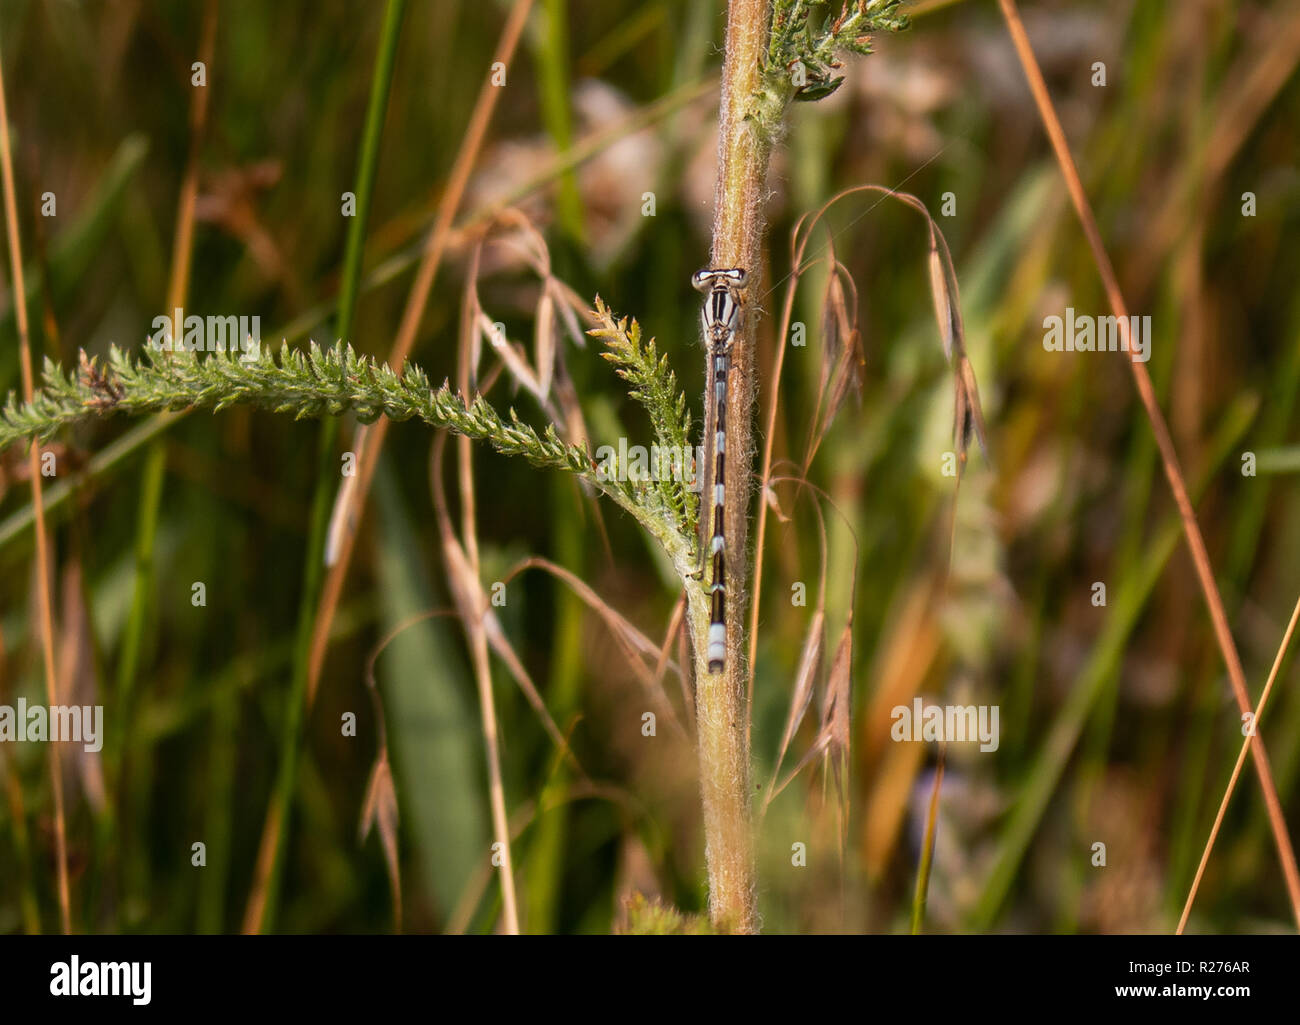 Esta es una foto de una libélula que descansa su cuerpo en un tallo de una planta hojeados verde Foto de stock